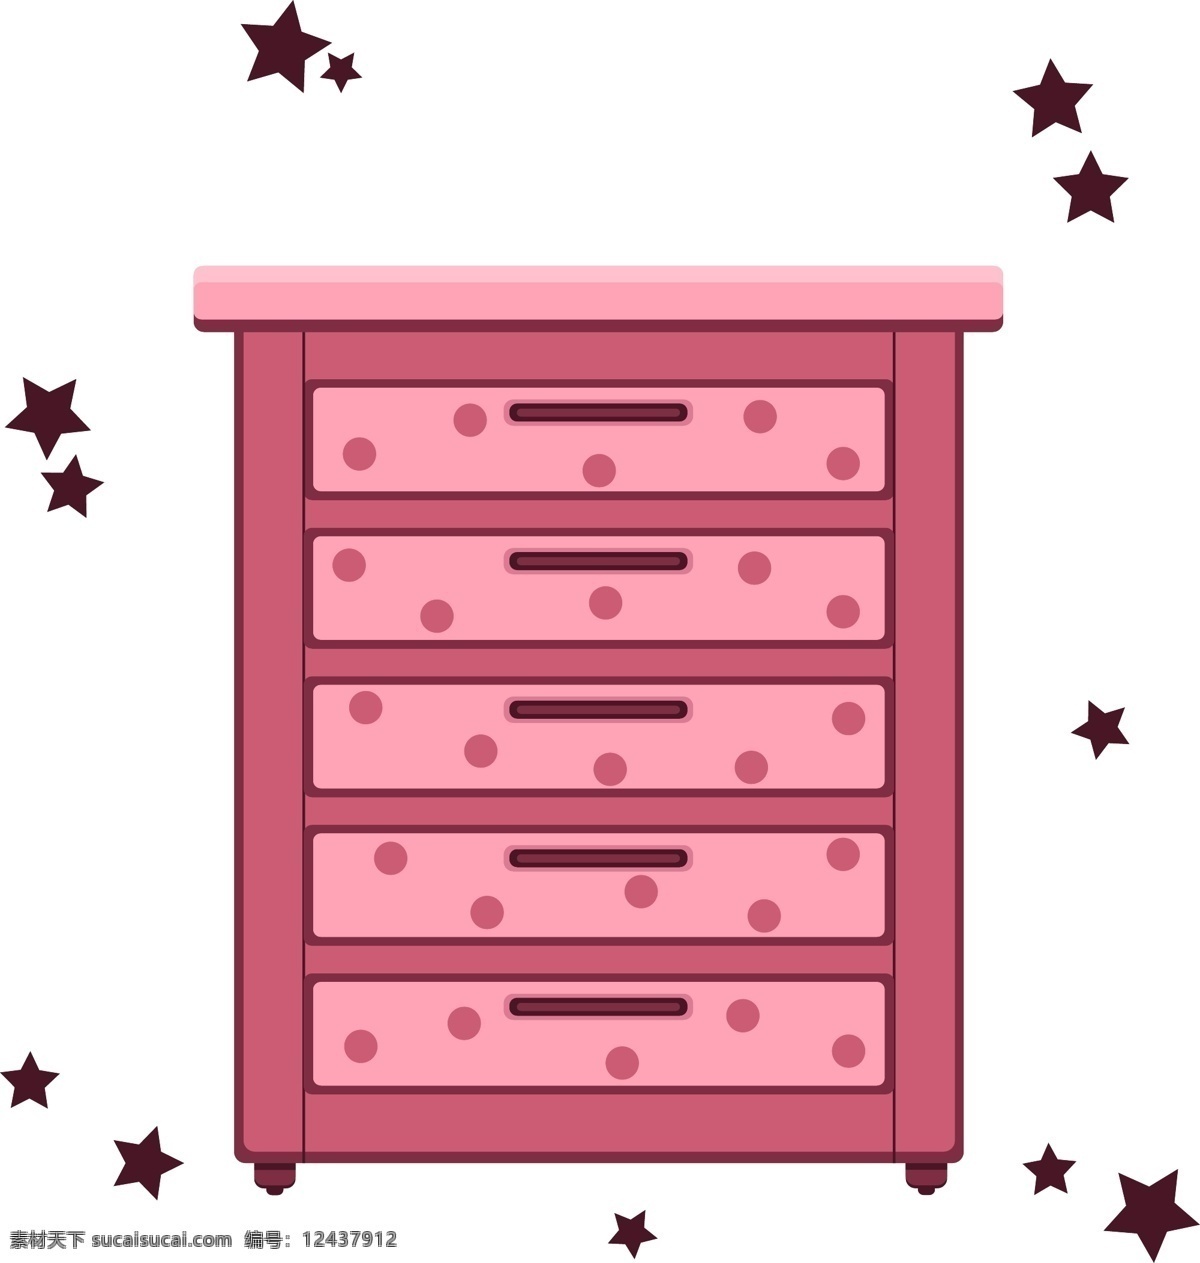 生活用品 家具 五斗橱 设计元素 粉色公主风